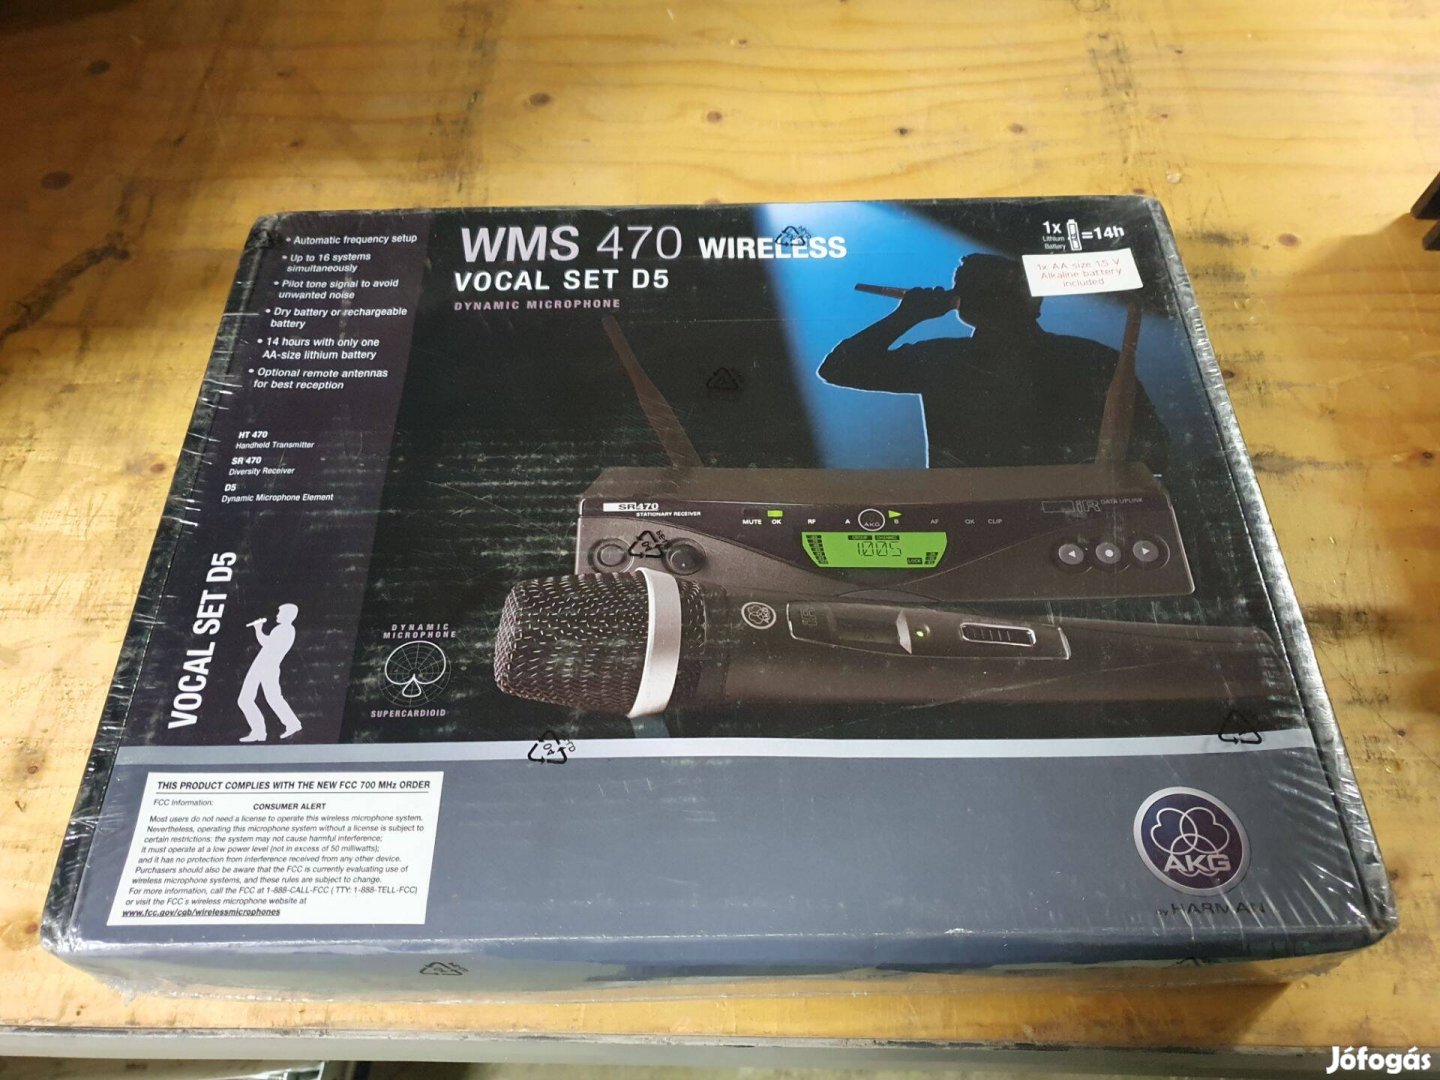 2 db AKG WMS 470 D5 rádiós mikrofon vezetéknélküli